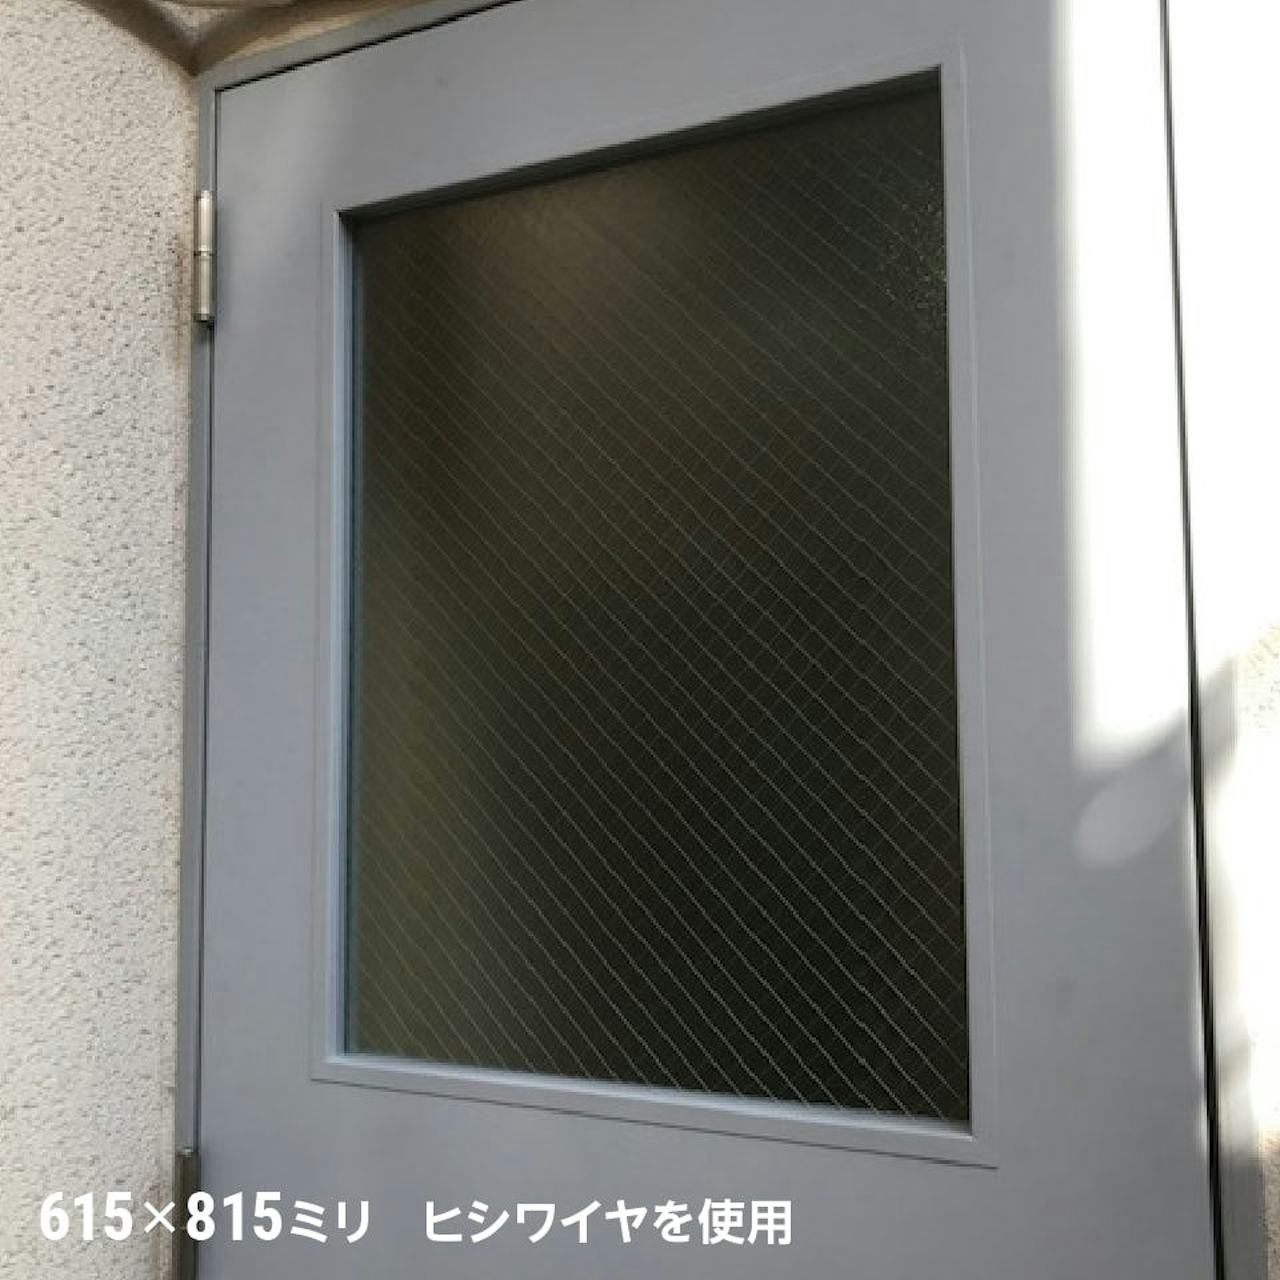 事務所の扉窓に、台風・地震対策におすすめの「網入りガラス」を使用した事例